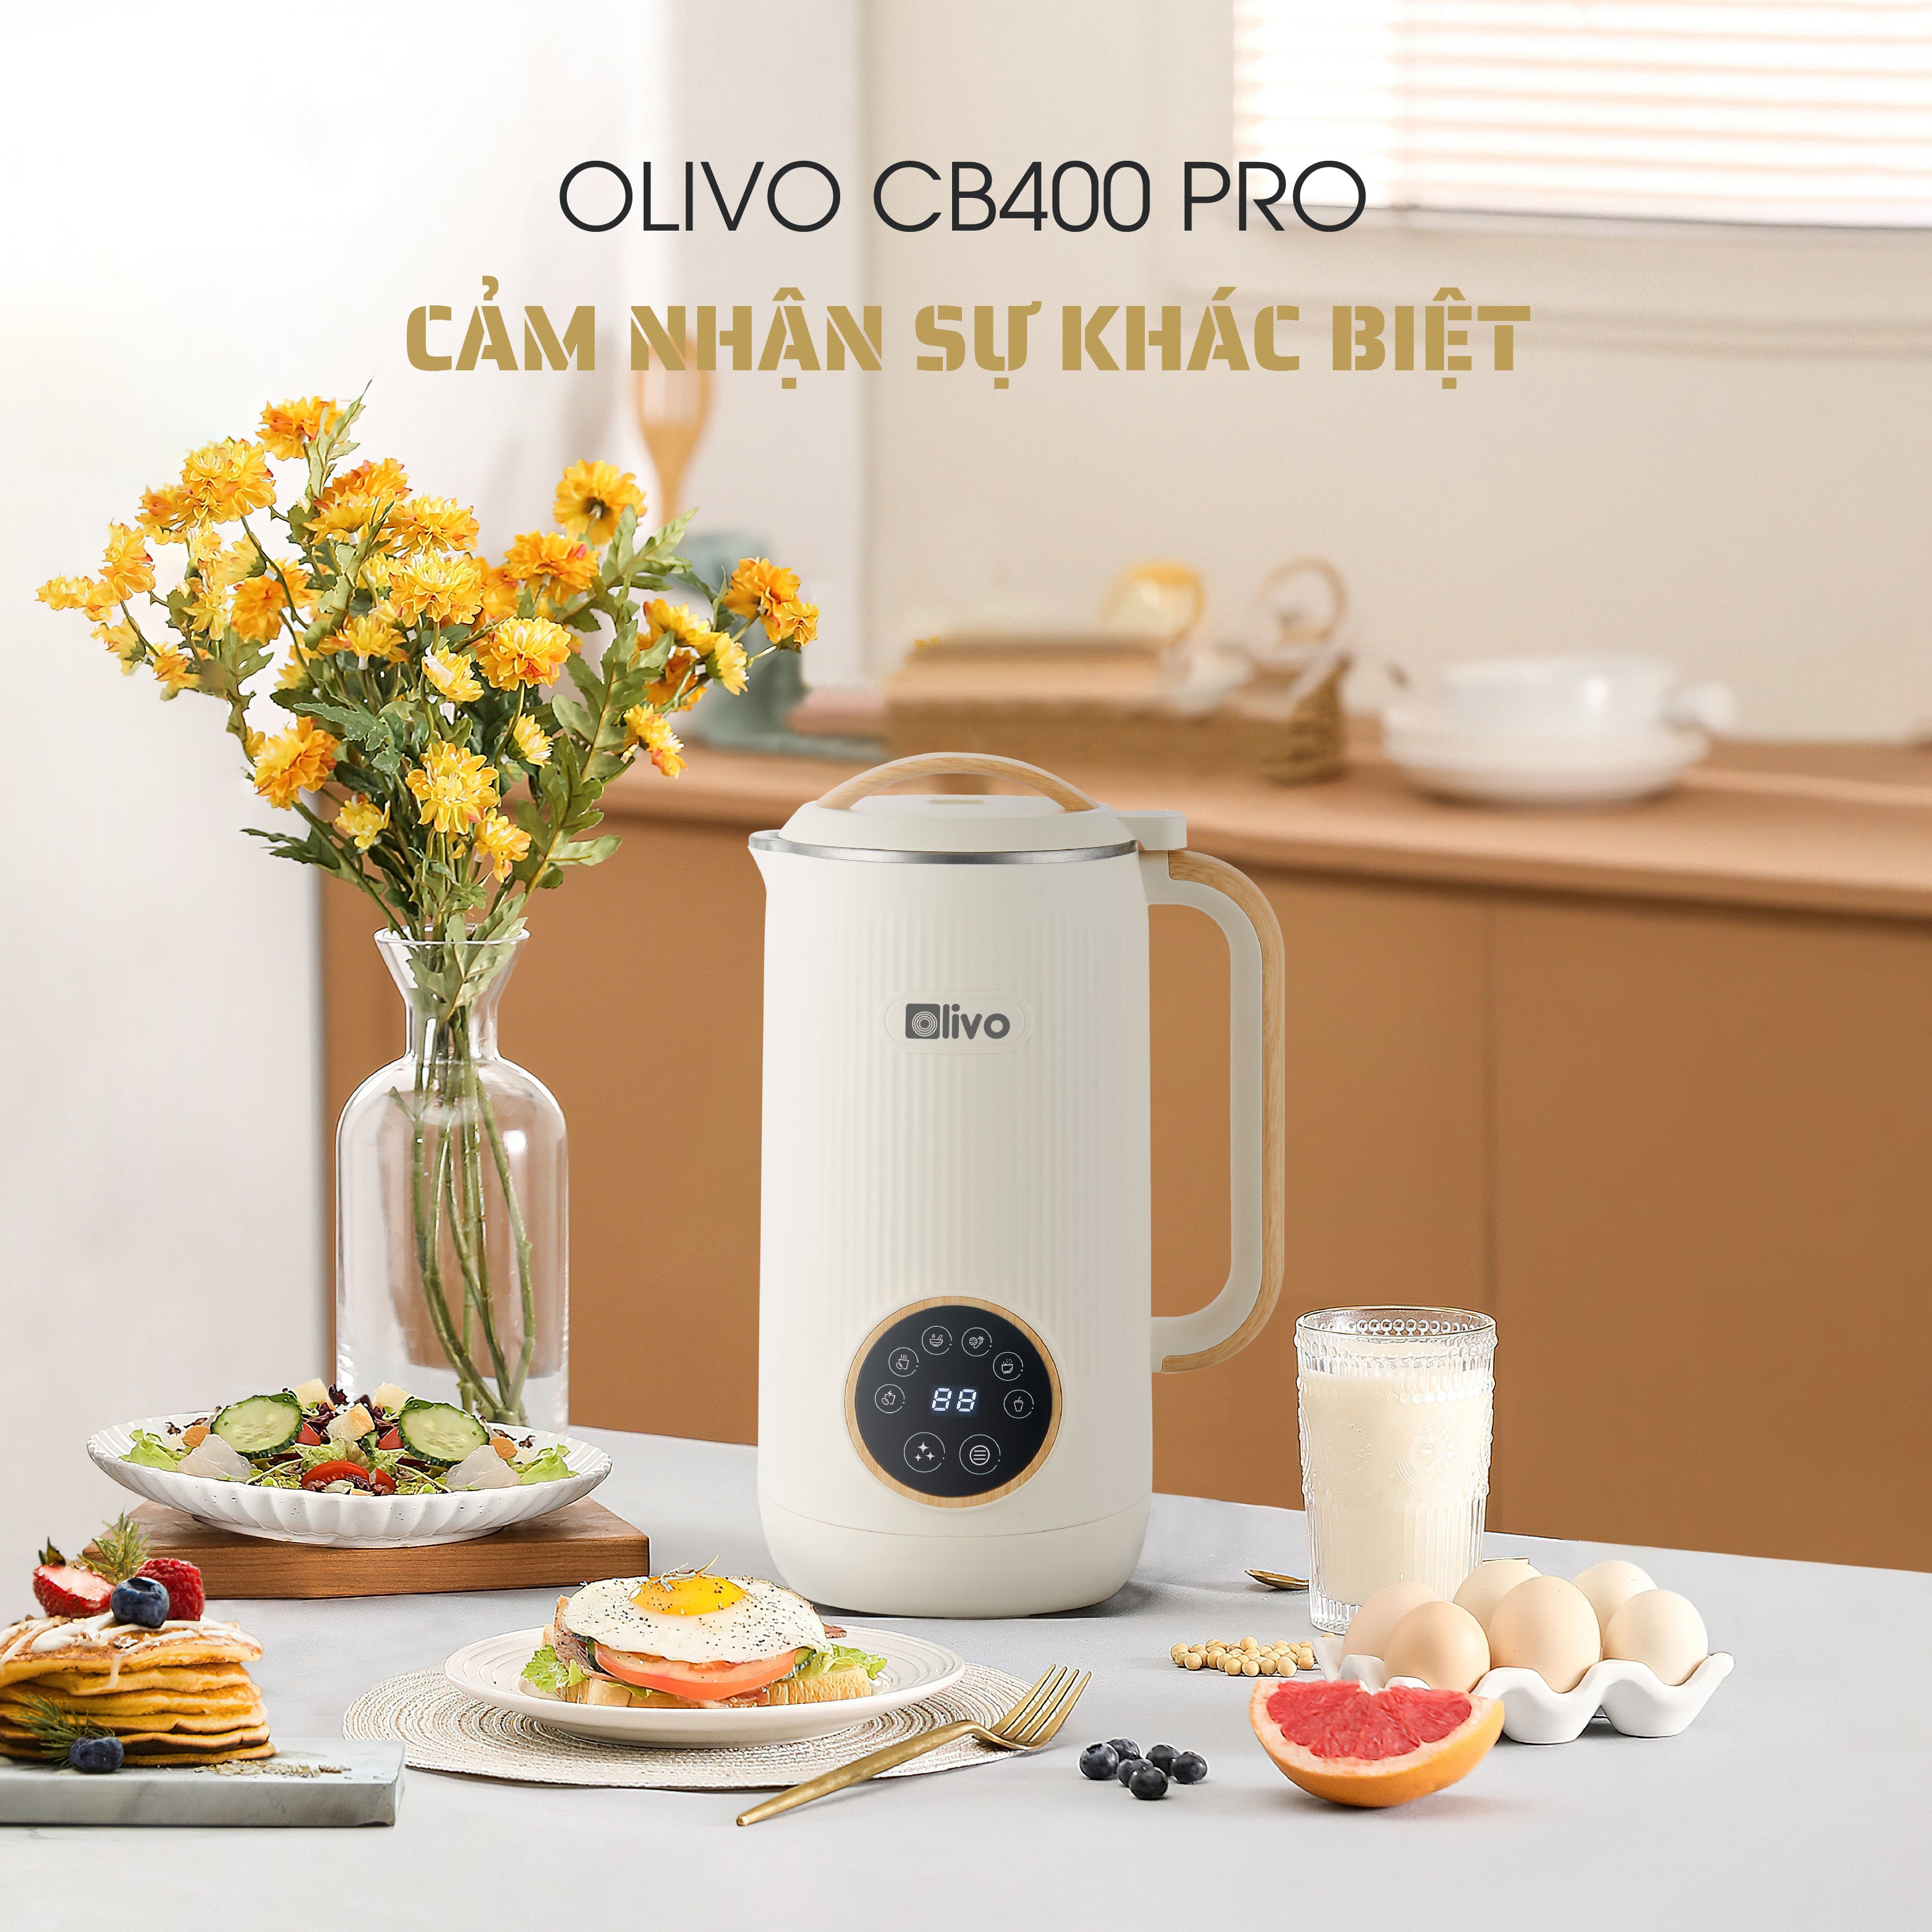 Máy Xay Nấu Đa Năng OLIVO CB400 PRO – Nhỏ Gọn Tiện Mang Theo – Đa Chức Năng – Cao Cấp